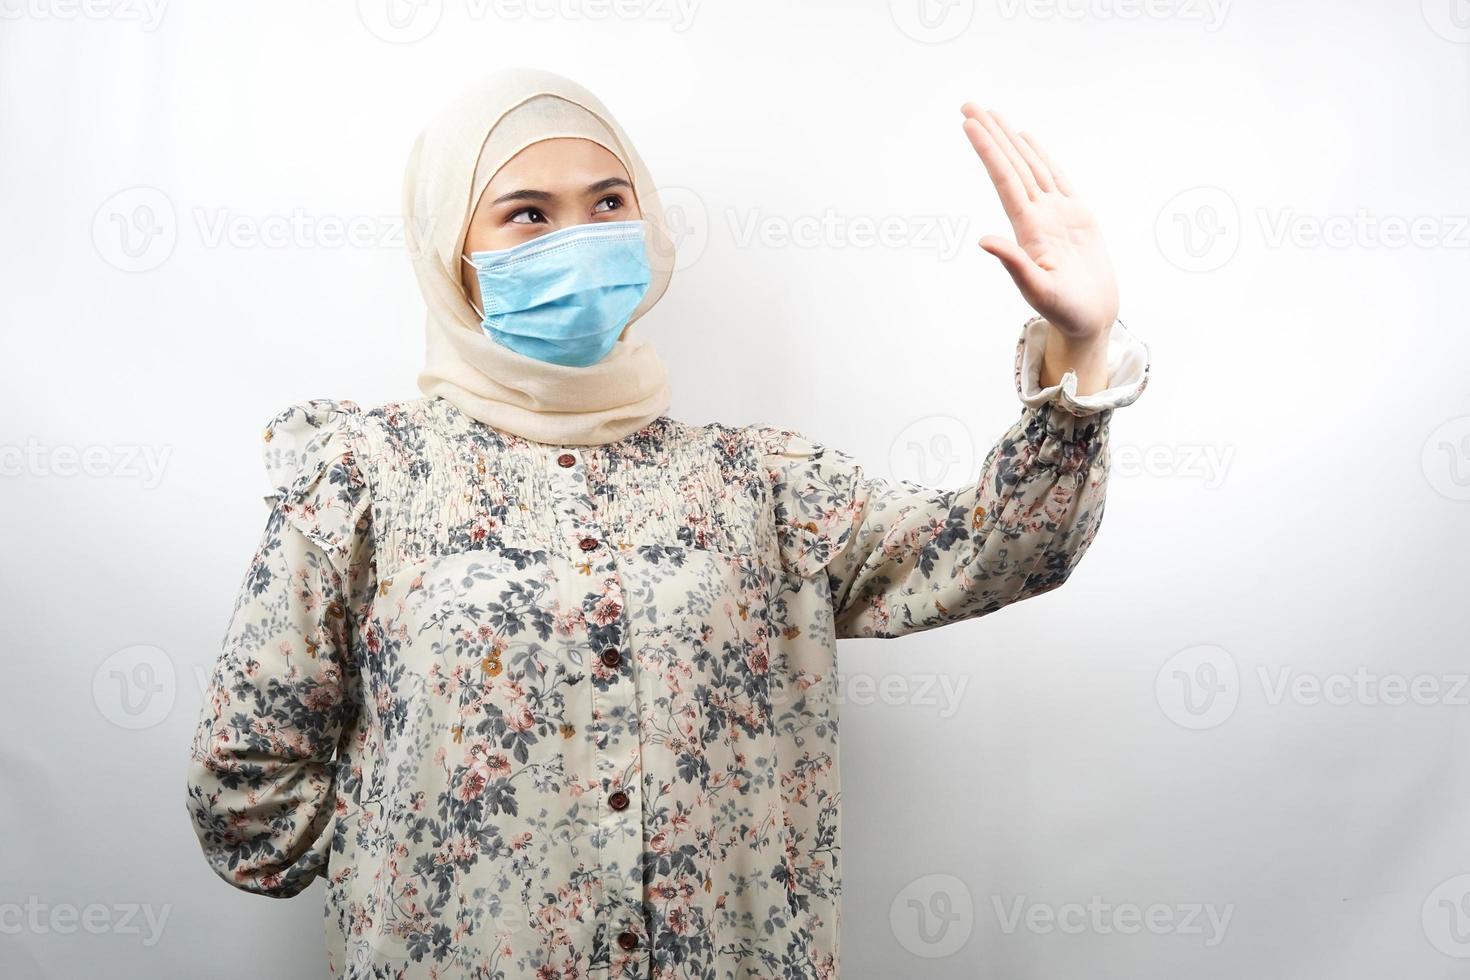 mulher muçulmana usando máscara médica com mão rejeitando algo, mão parando algo, mão não gostando de algo, isolado no fundo branco foto